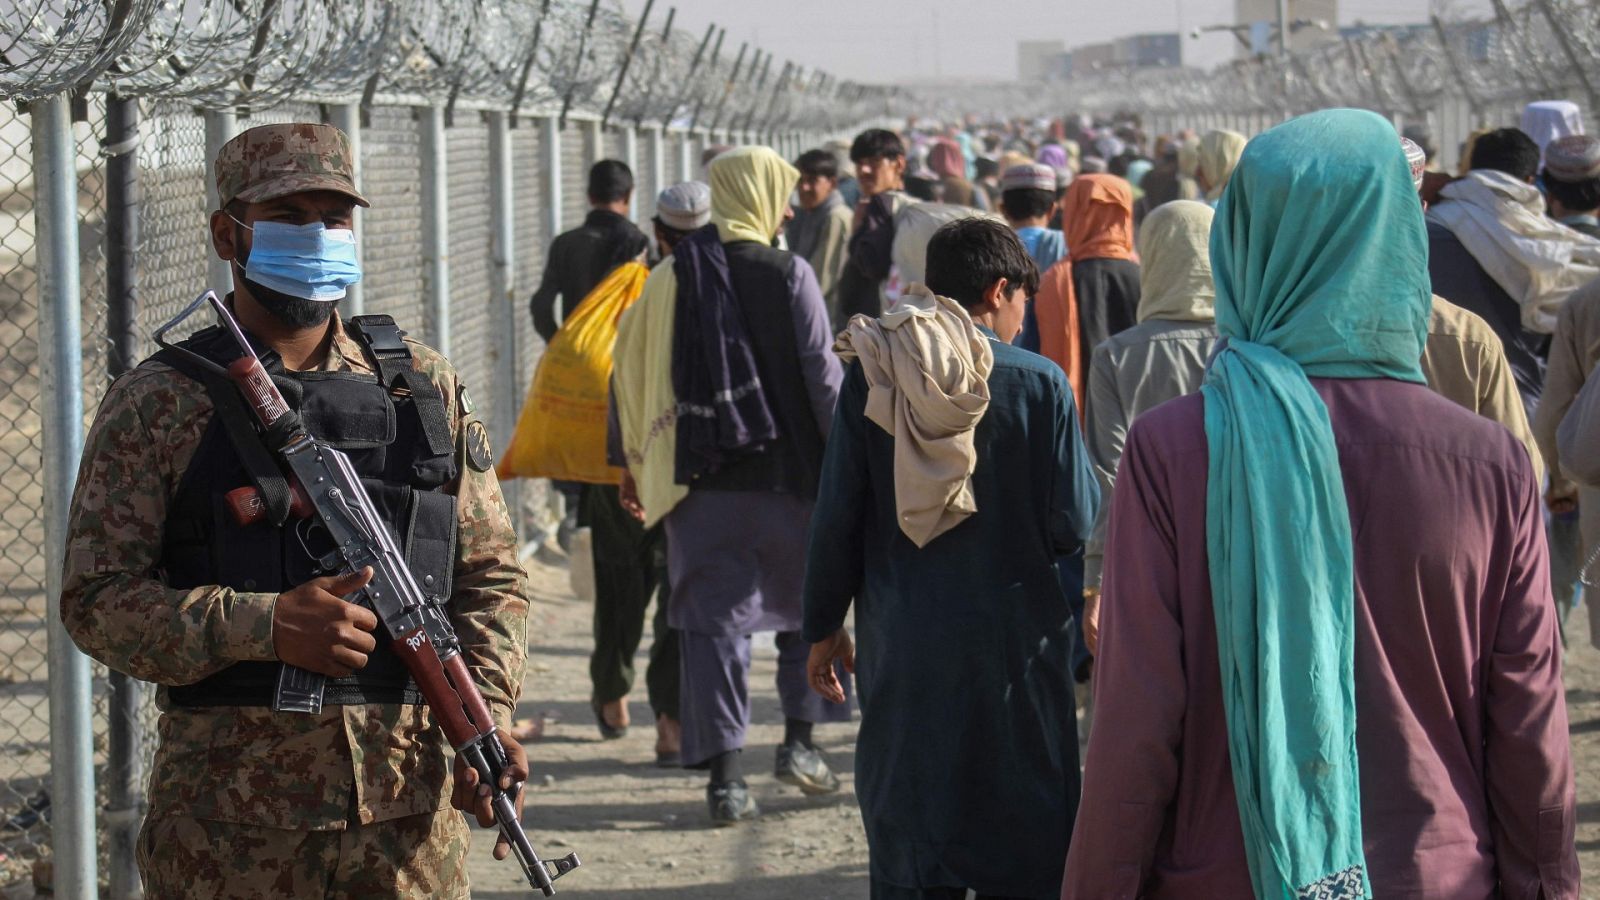 Un soldado paquistaní hace guardia mientras los afganos caminan a lo largo de las vallas después de llegar a Pakistán a través del paso fronterizo entre Pakistán y Afganistán en Chaman el 26 de agosto de 2021